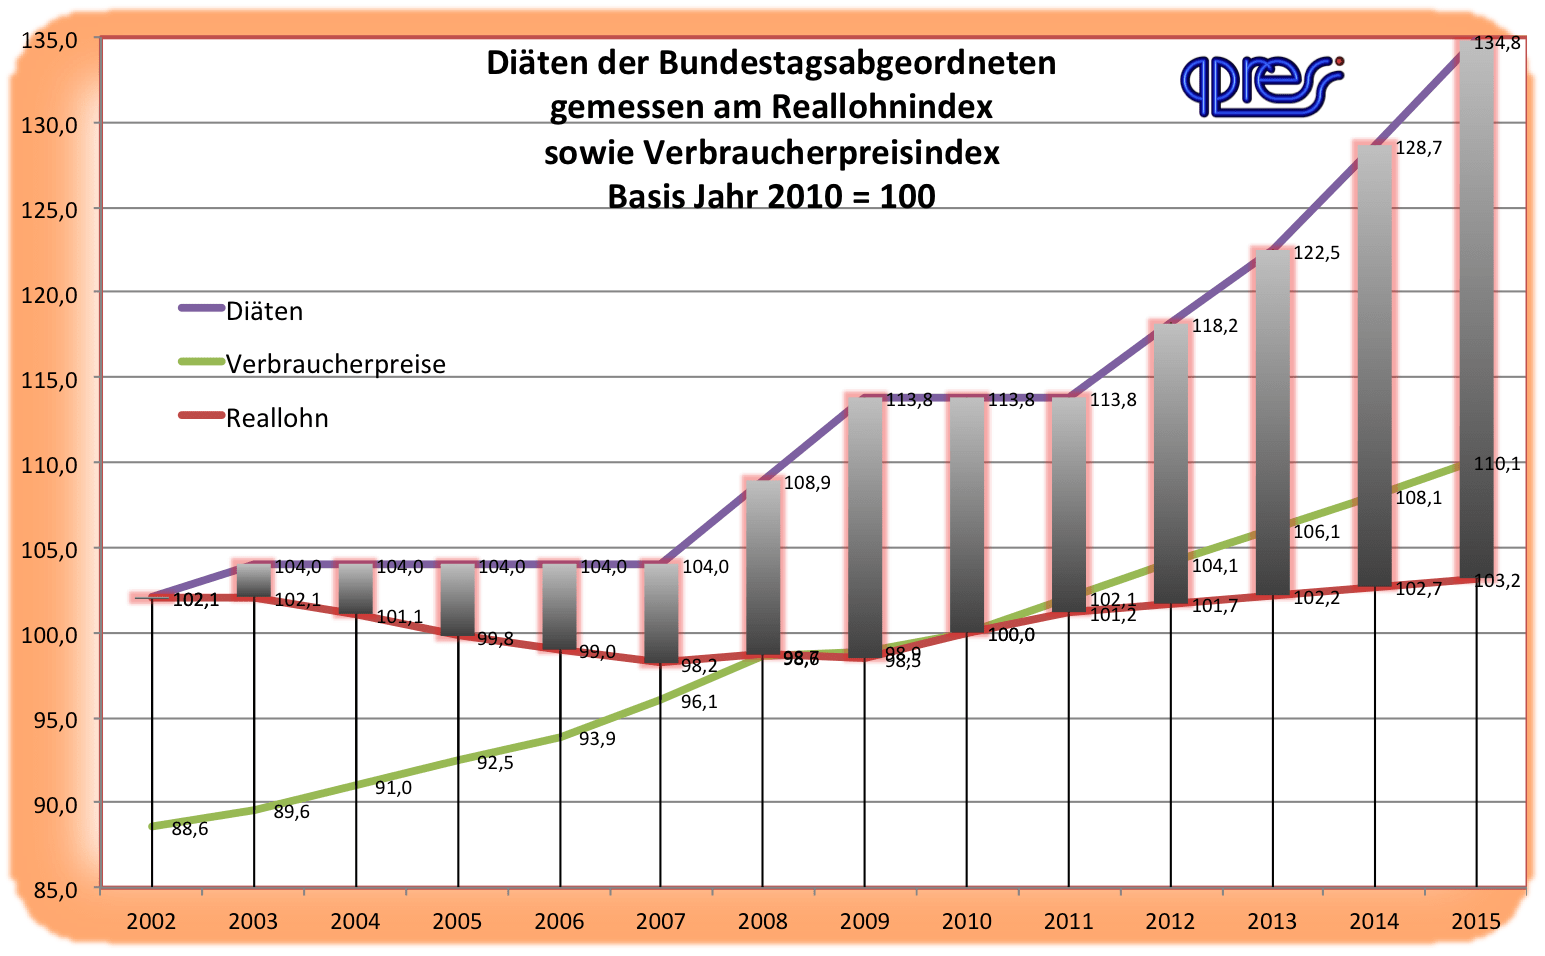 Diaeten Abgeordnetenentschaedigung 2002 bis 2015 gemessen an Reallohn und Verbraucherpreisen qpress